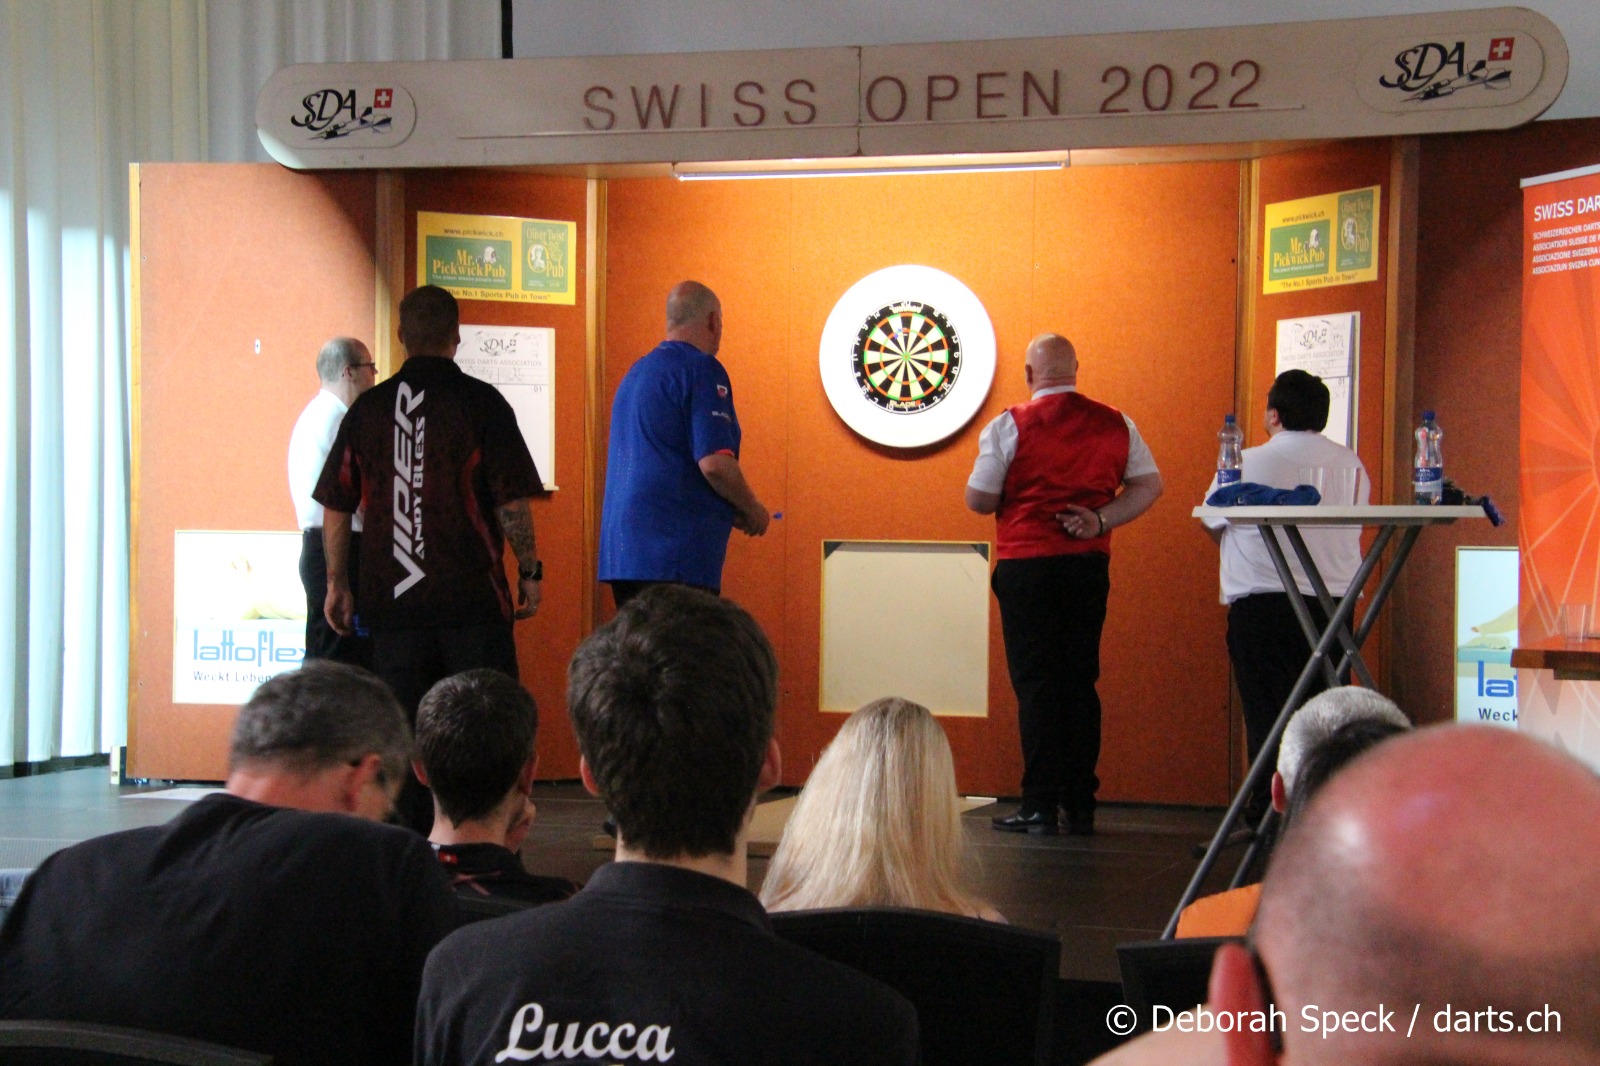 Swiss Open and Helvetia Open 2022